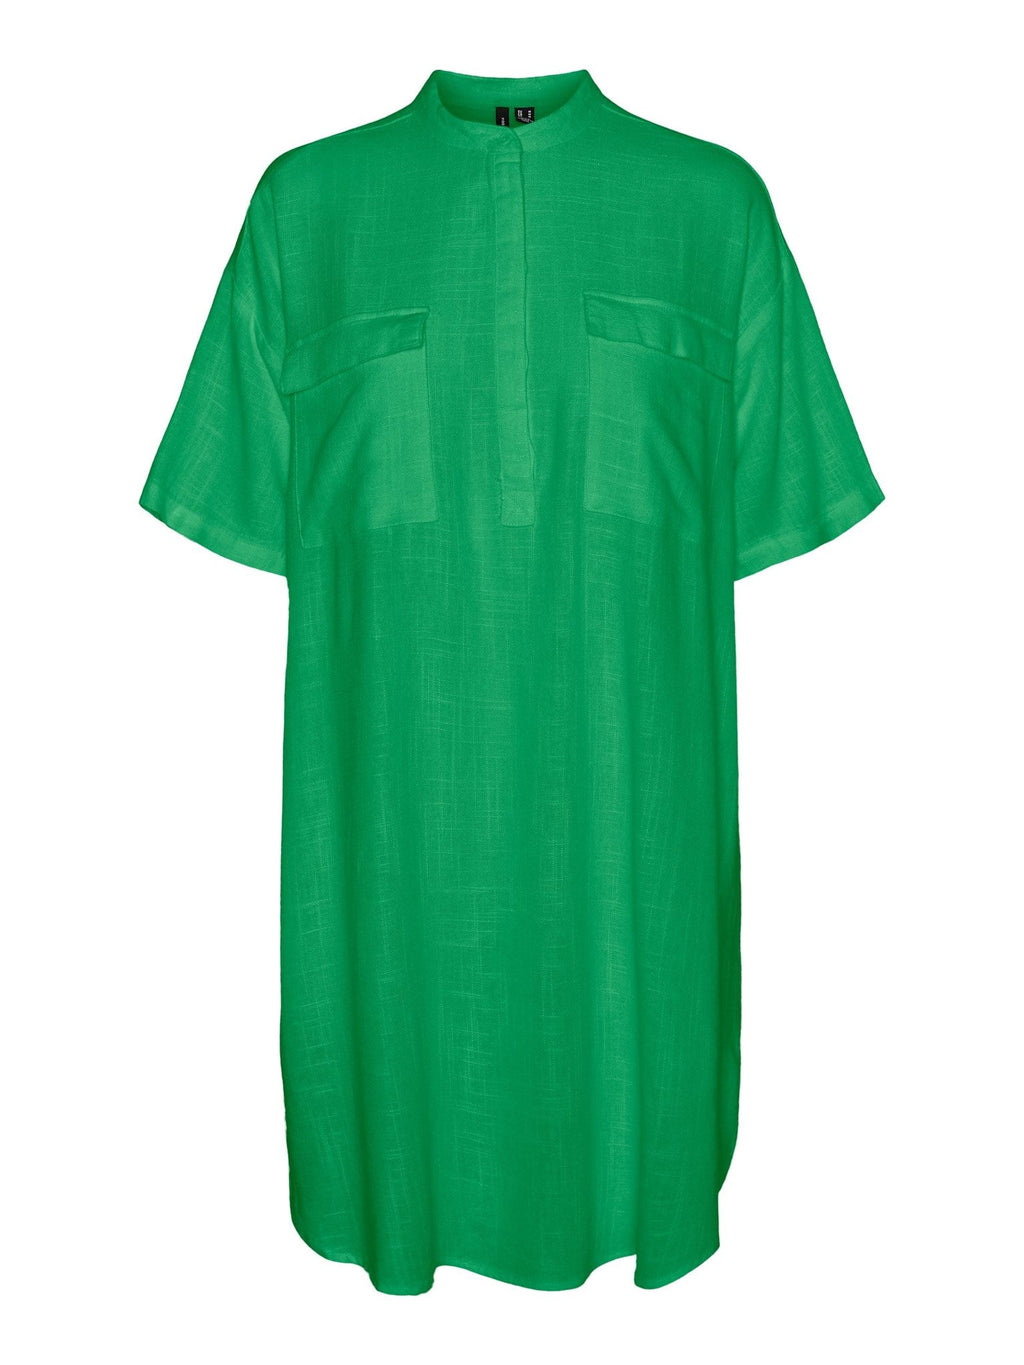 Μίνι φόρεμα γραμμής - φωτεινό πράσινο